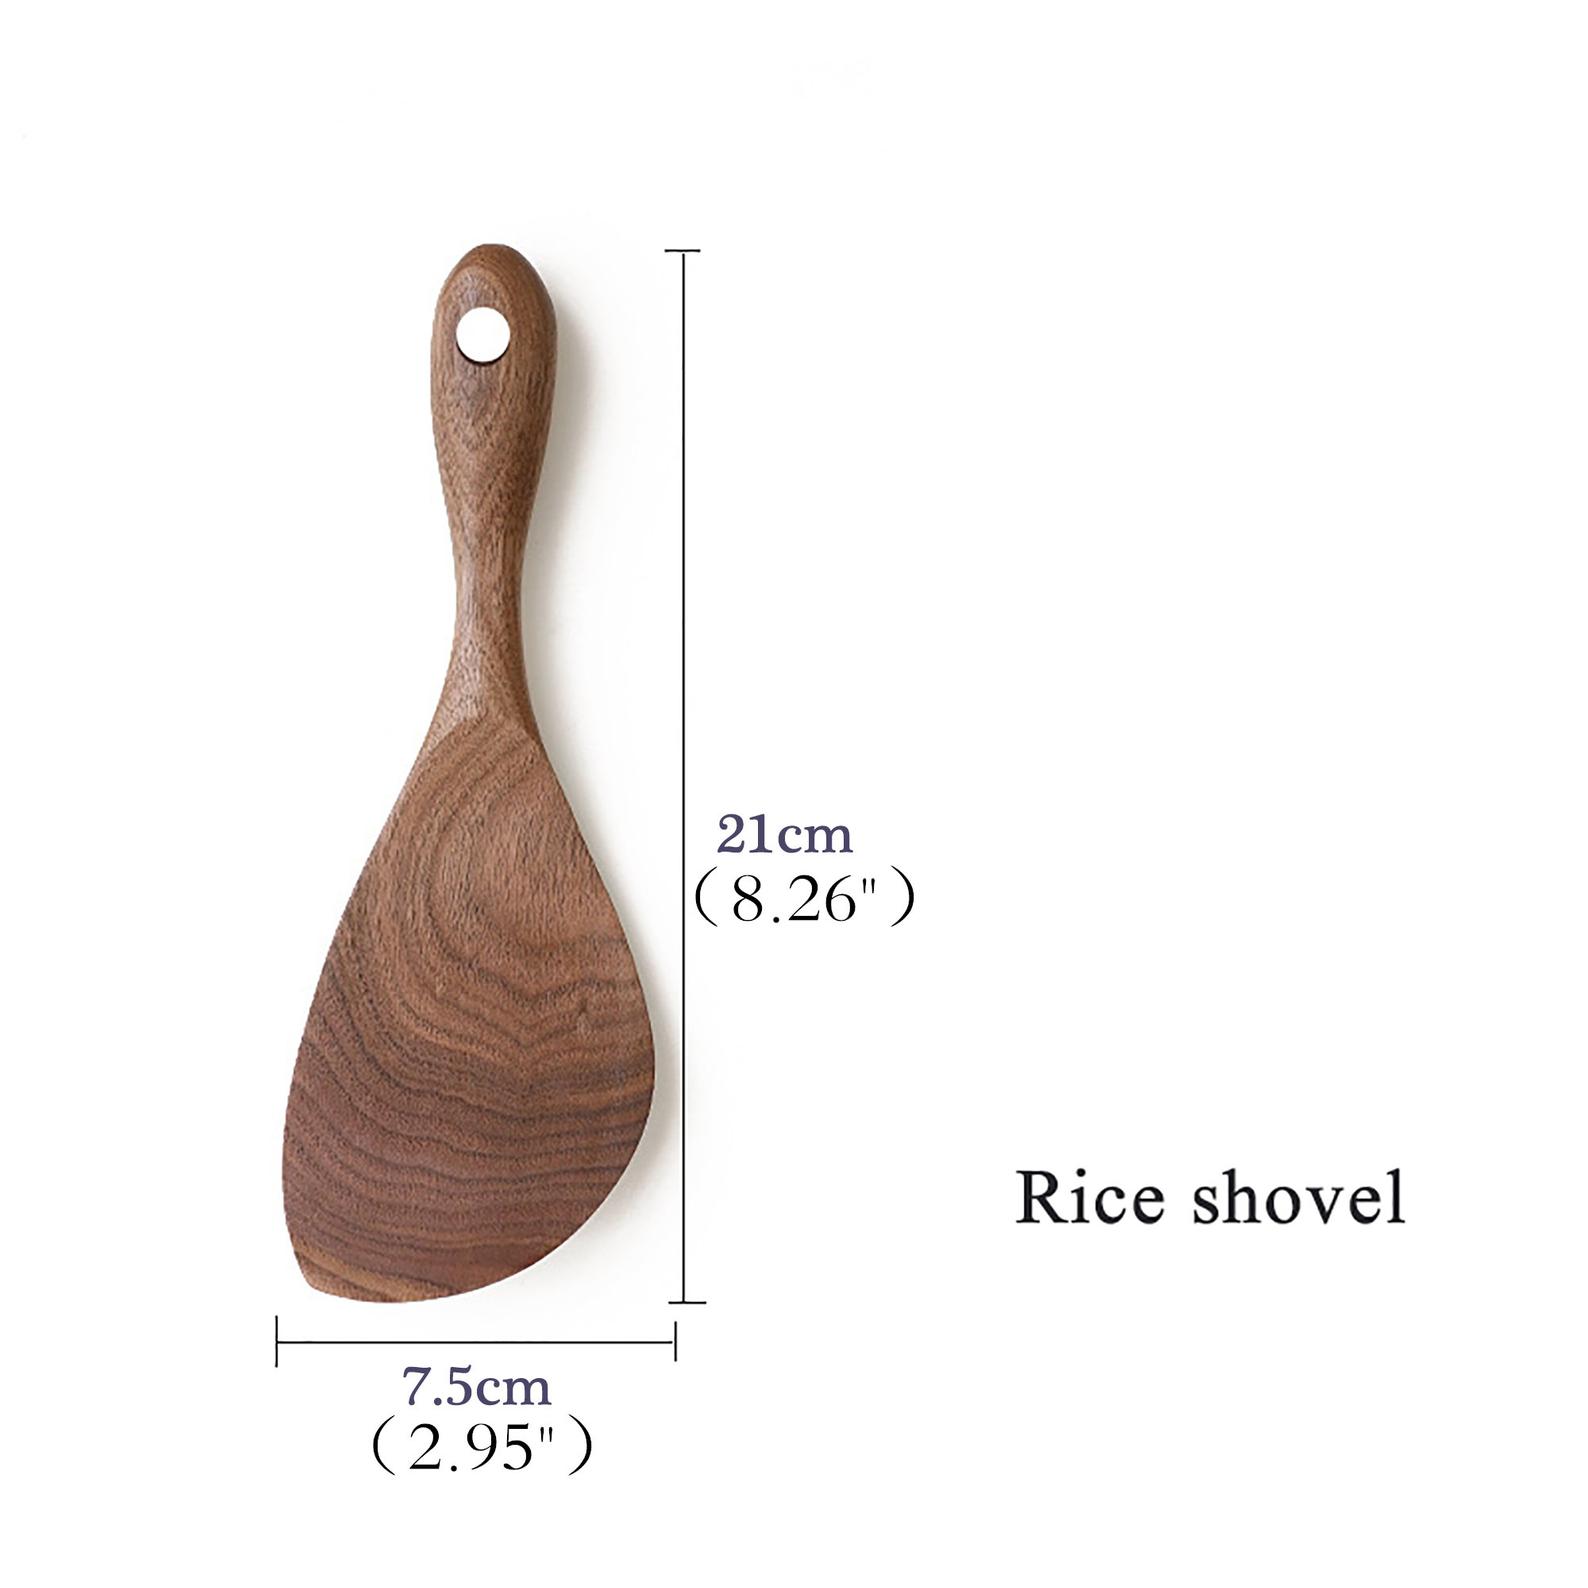 Walnut wooden rice shovel on white background